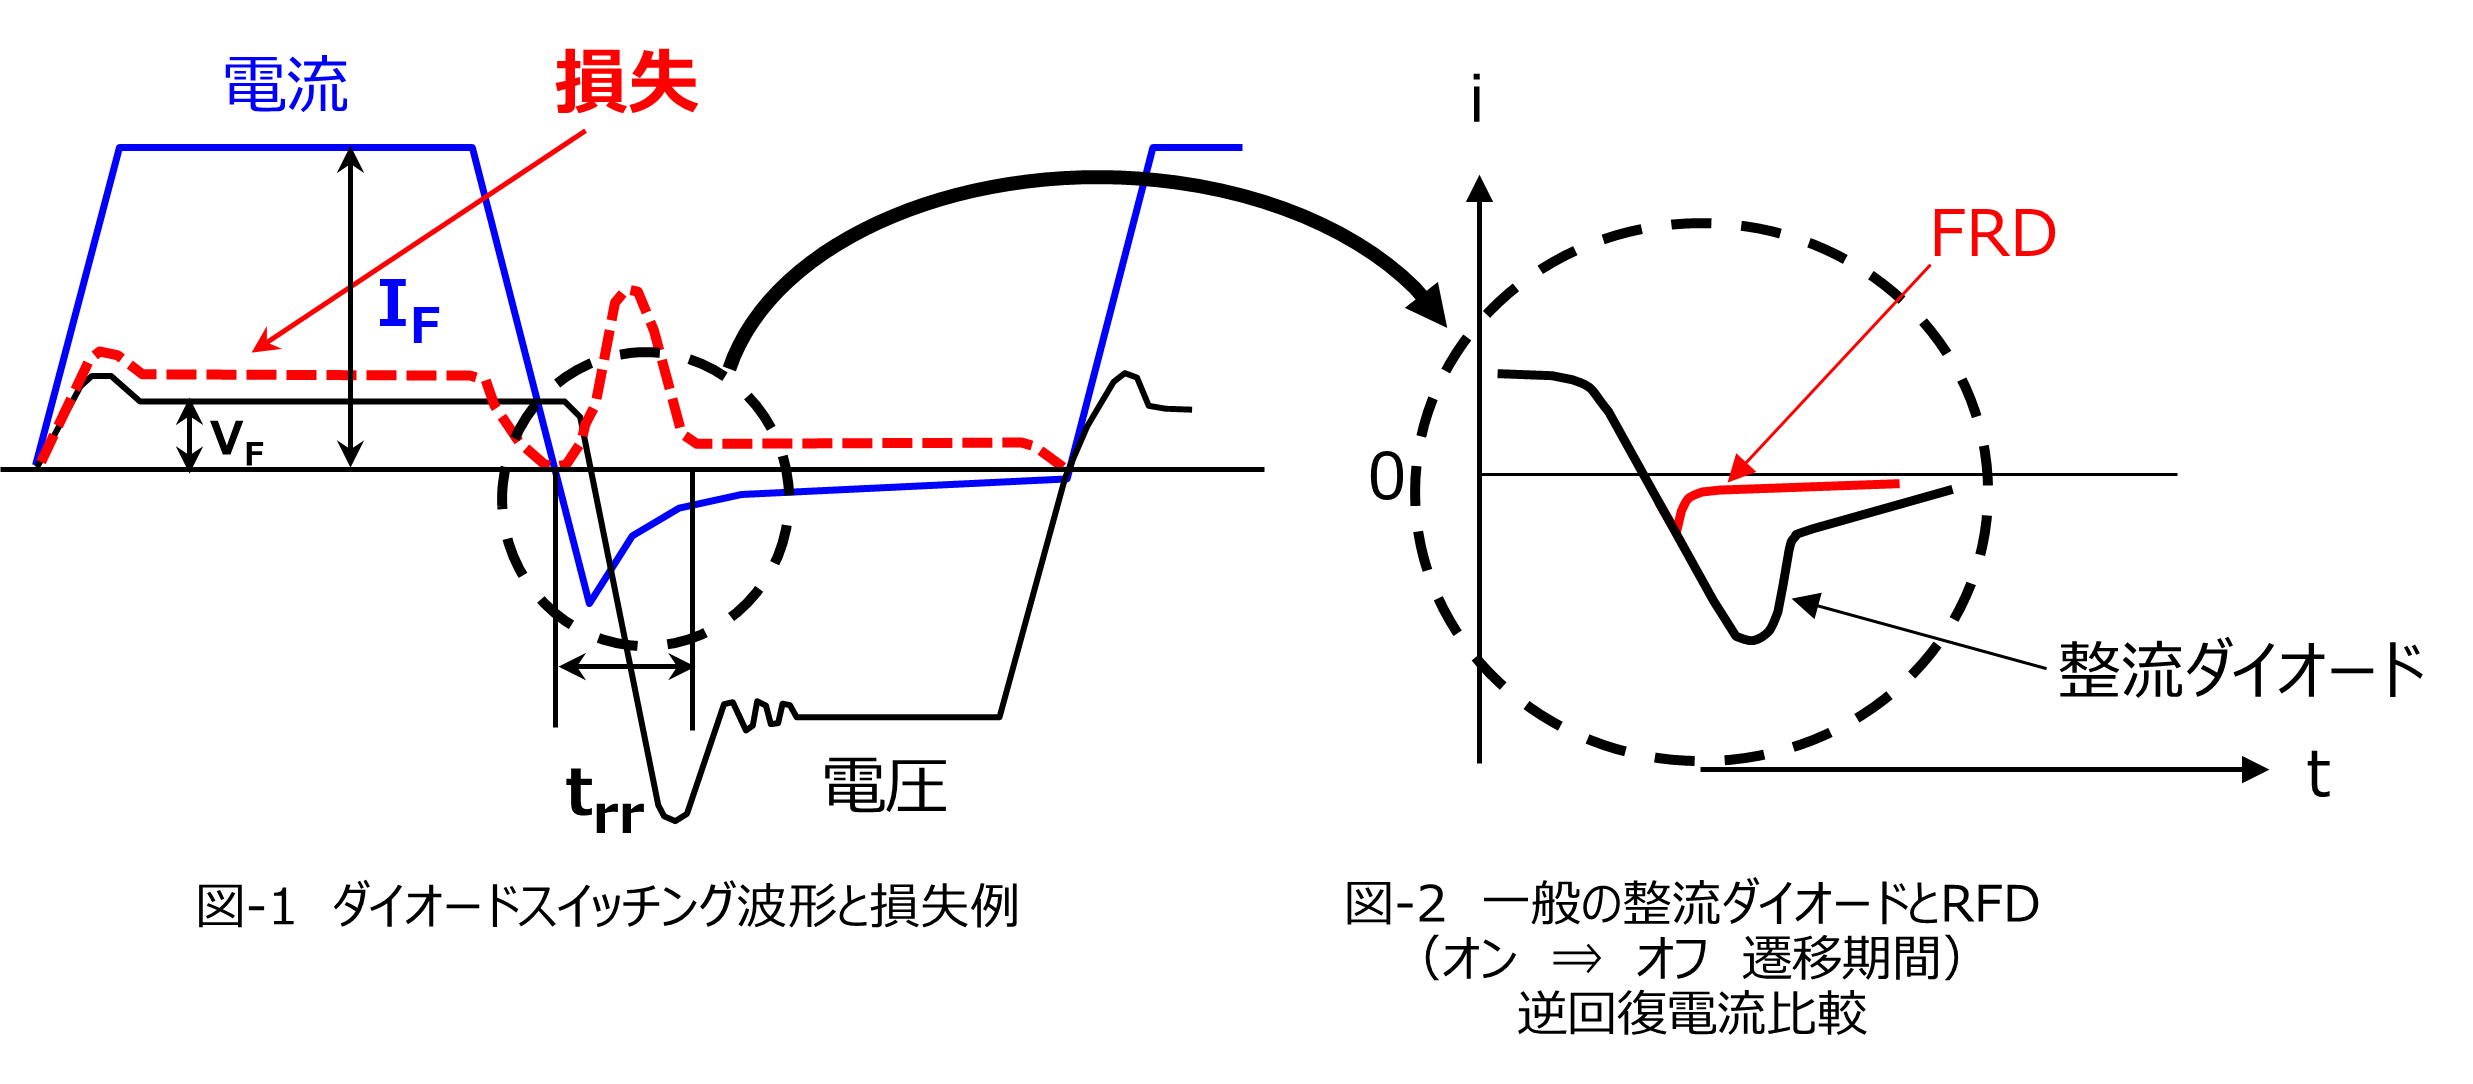 図-1　ダイオードスイッチング波形と損失例、図-2　一般の整流ダイオードとRFD （オン　⇒　オフ　遷移期間） 逆回復電流比較